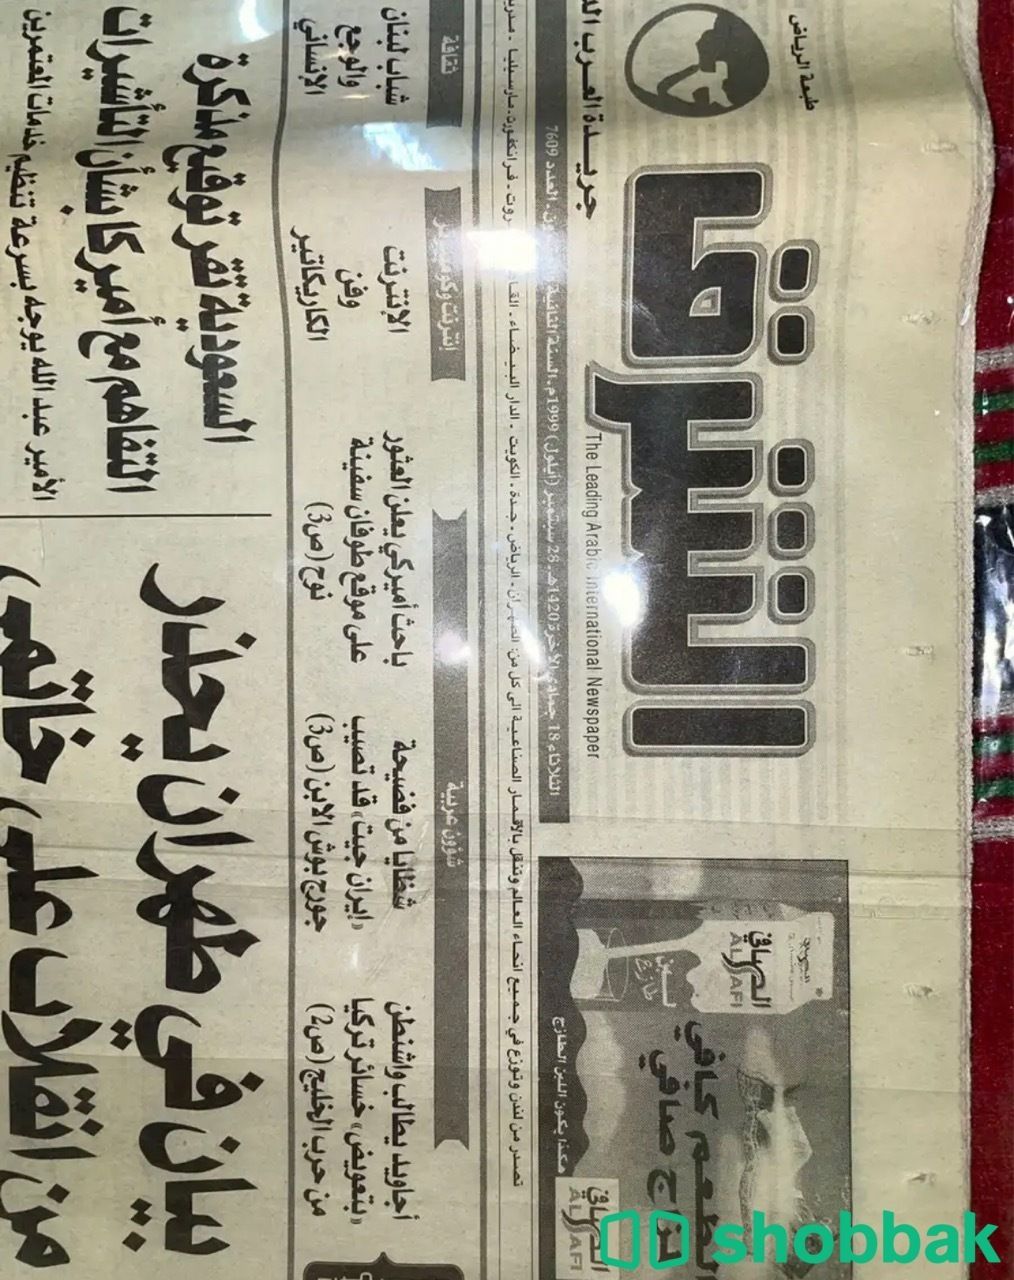 جريدة قديمة Shobbak Saudi Arabia